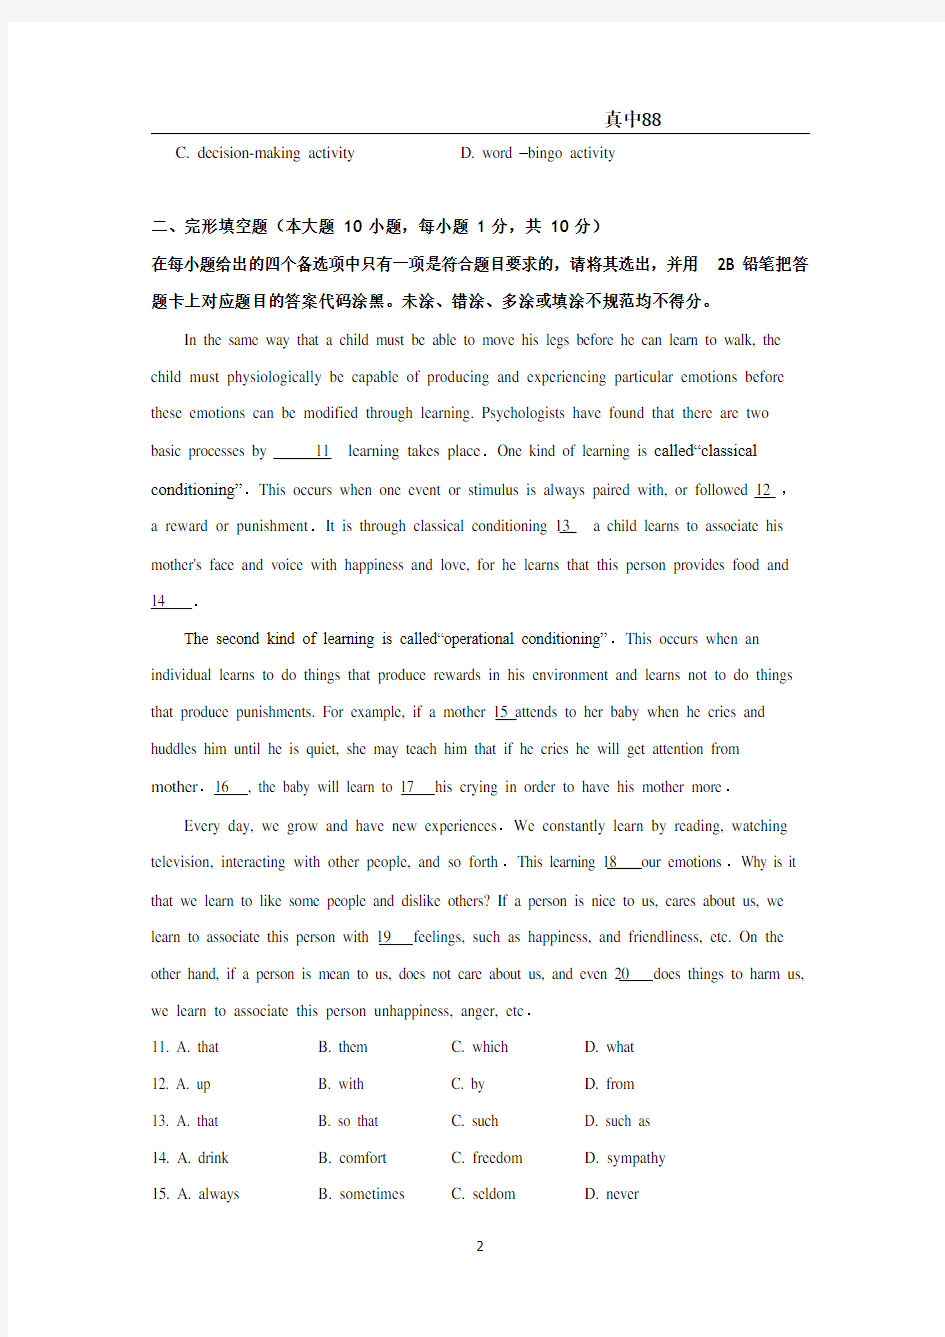 【小学英语】2019.5.11湖北省农村义务教师试卷-真题